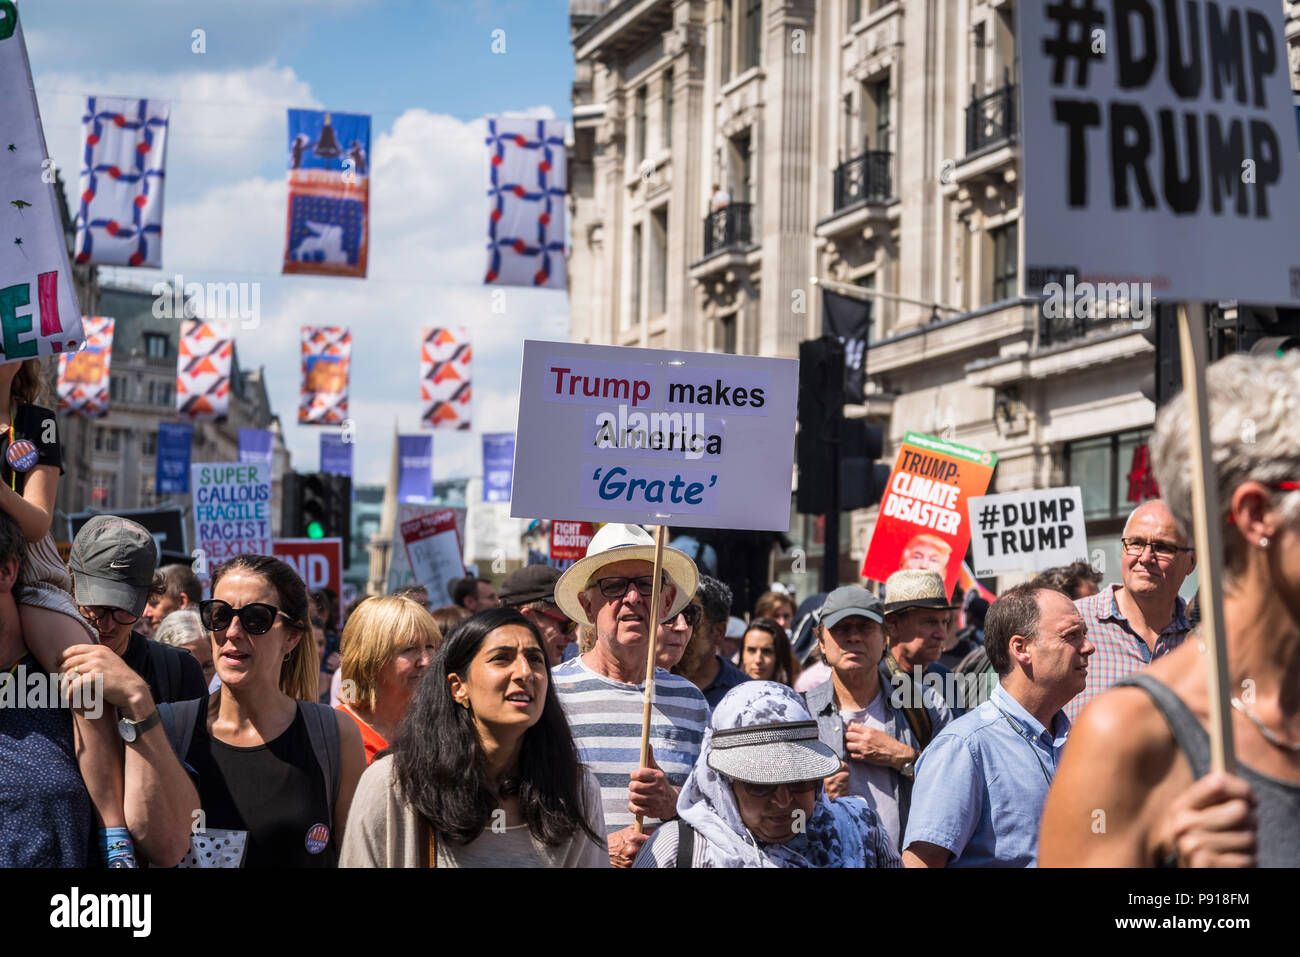 Londra, UK, 13 luglio 2018. Dimostrazione Anti-Trump, Trump America rende grata, London, Regno Unito 13.07.2018 Credito: Bjanka Kadic/Alamy Live News Foto Stock